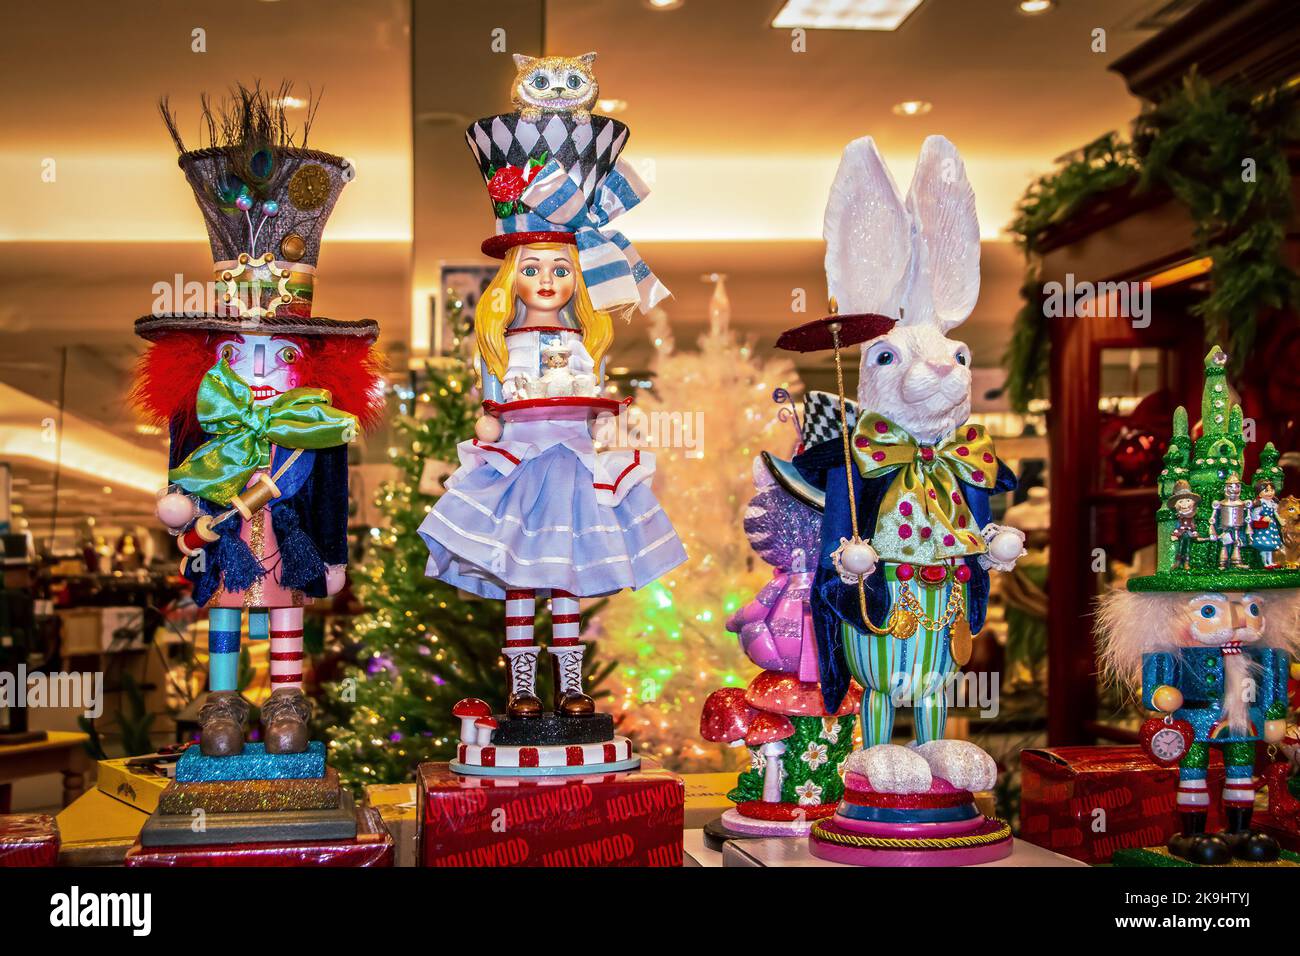 12-17-2021 Tulsa USA Alice in Wonderland Figurines de Navidad y cascanueces en exhibición en la tienda departamental con árboles de Navidad borrosos en el fondo Foto de stock